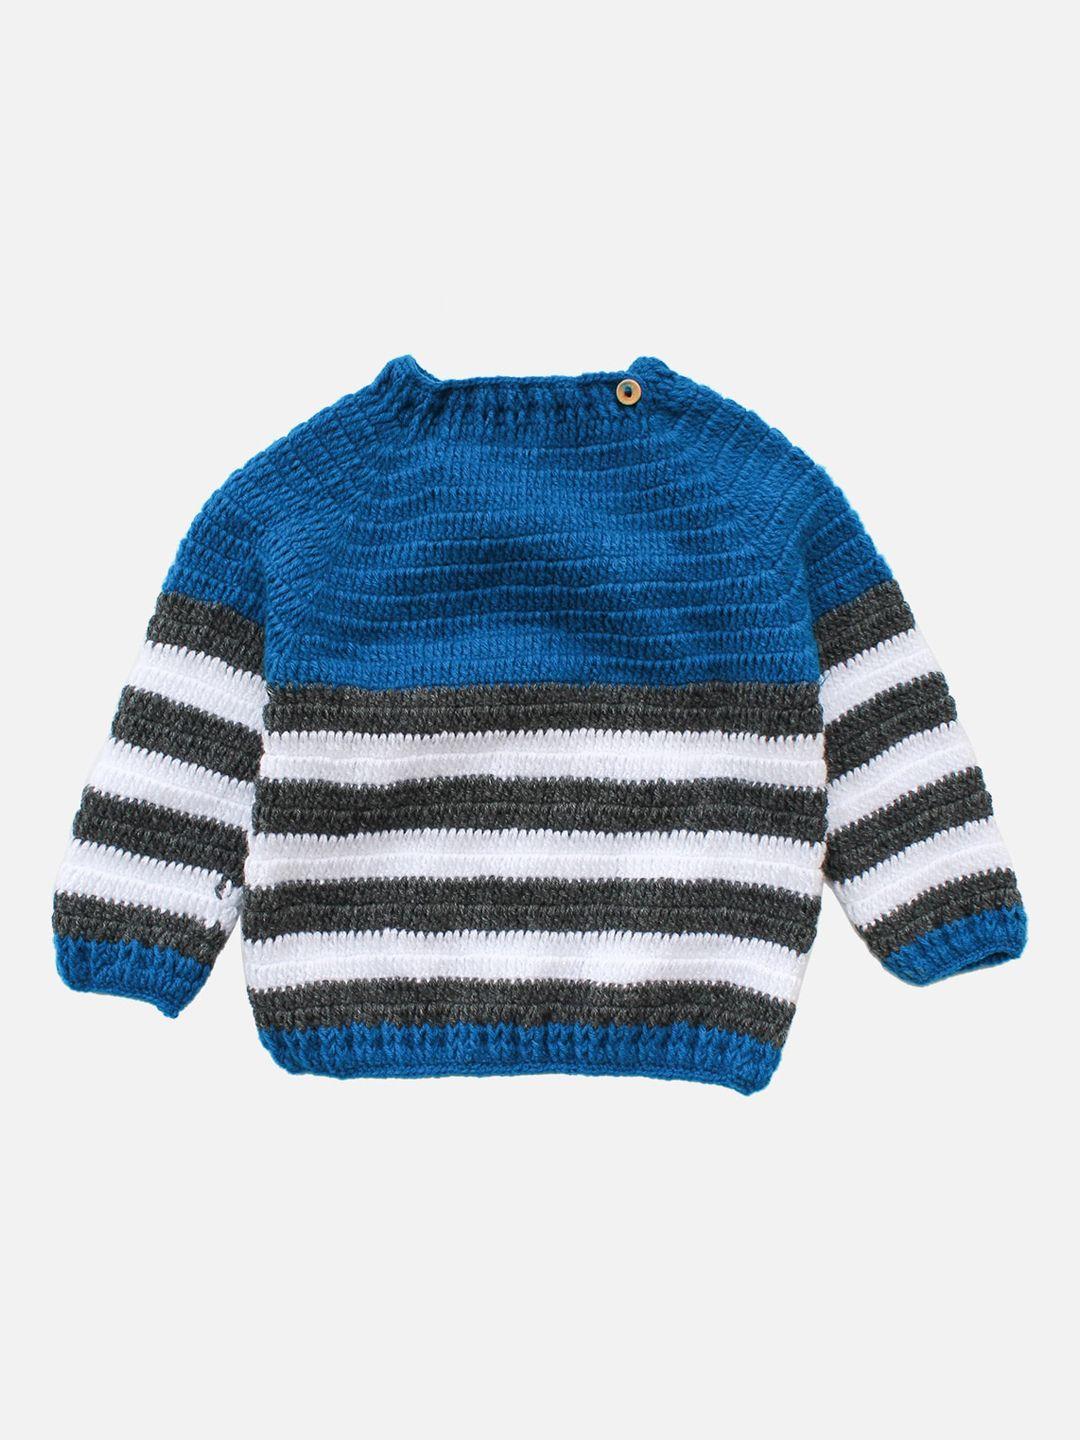 woonie unisex kids blue & white striped handmade pullover sweater